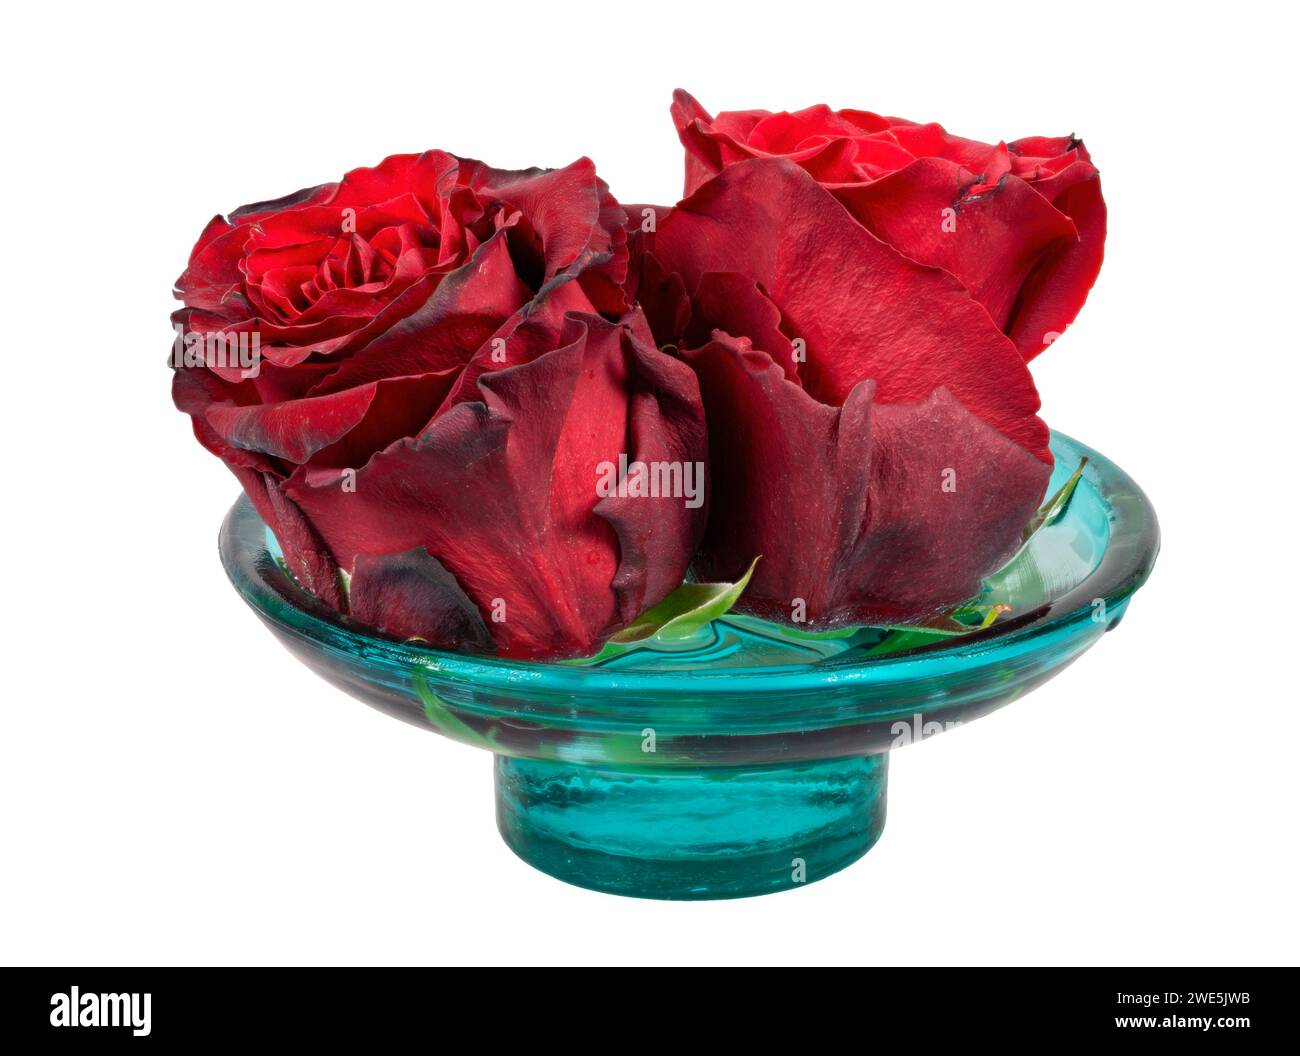 Fiori di rose rosse appassite isolate in un recipiente di vetro Foto Stock